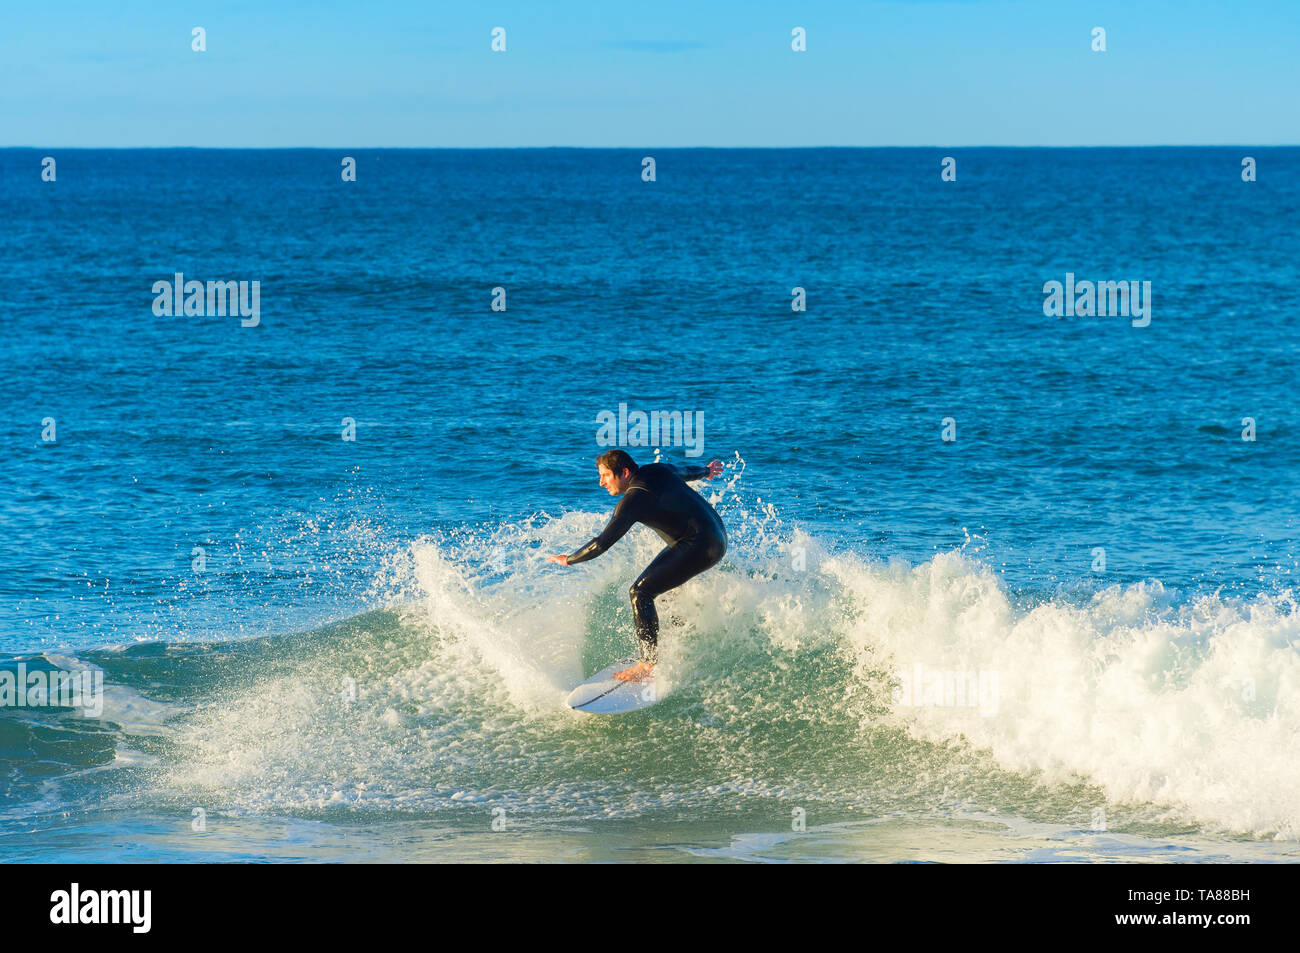 PENICHE, PORTUGAL - Dezember 04, 2016: Surfer eine Welle auf Surfbrett in Peniche fahren. Peniche - berühmte Surfen in Portugal Stockfoto